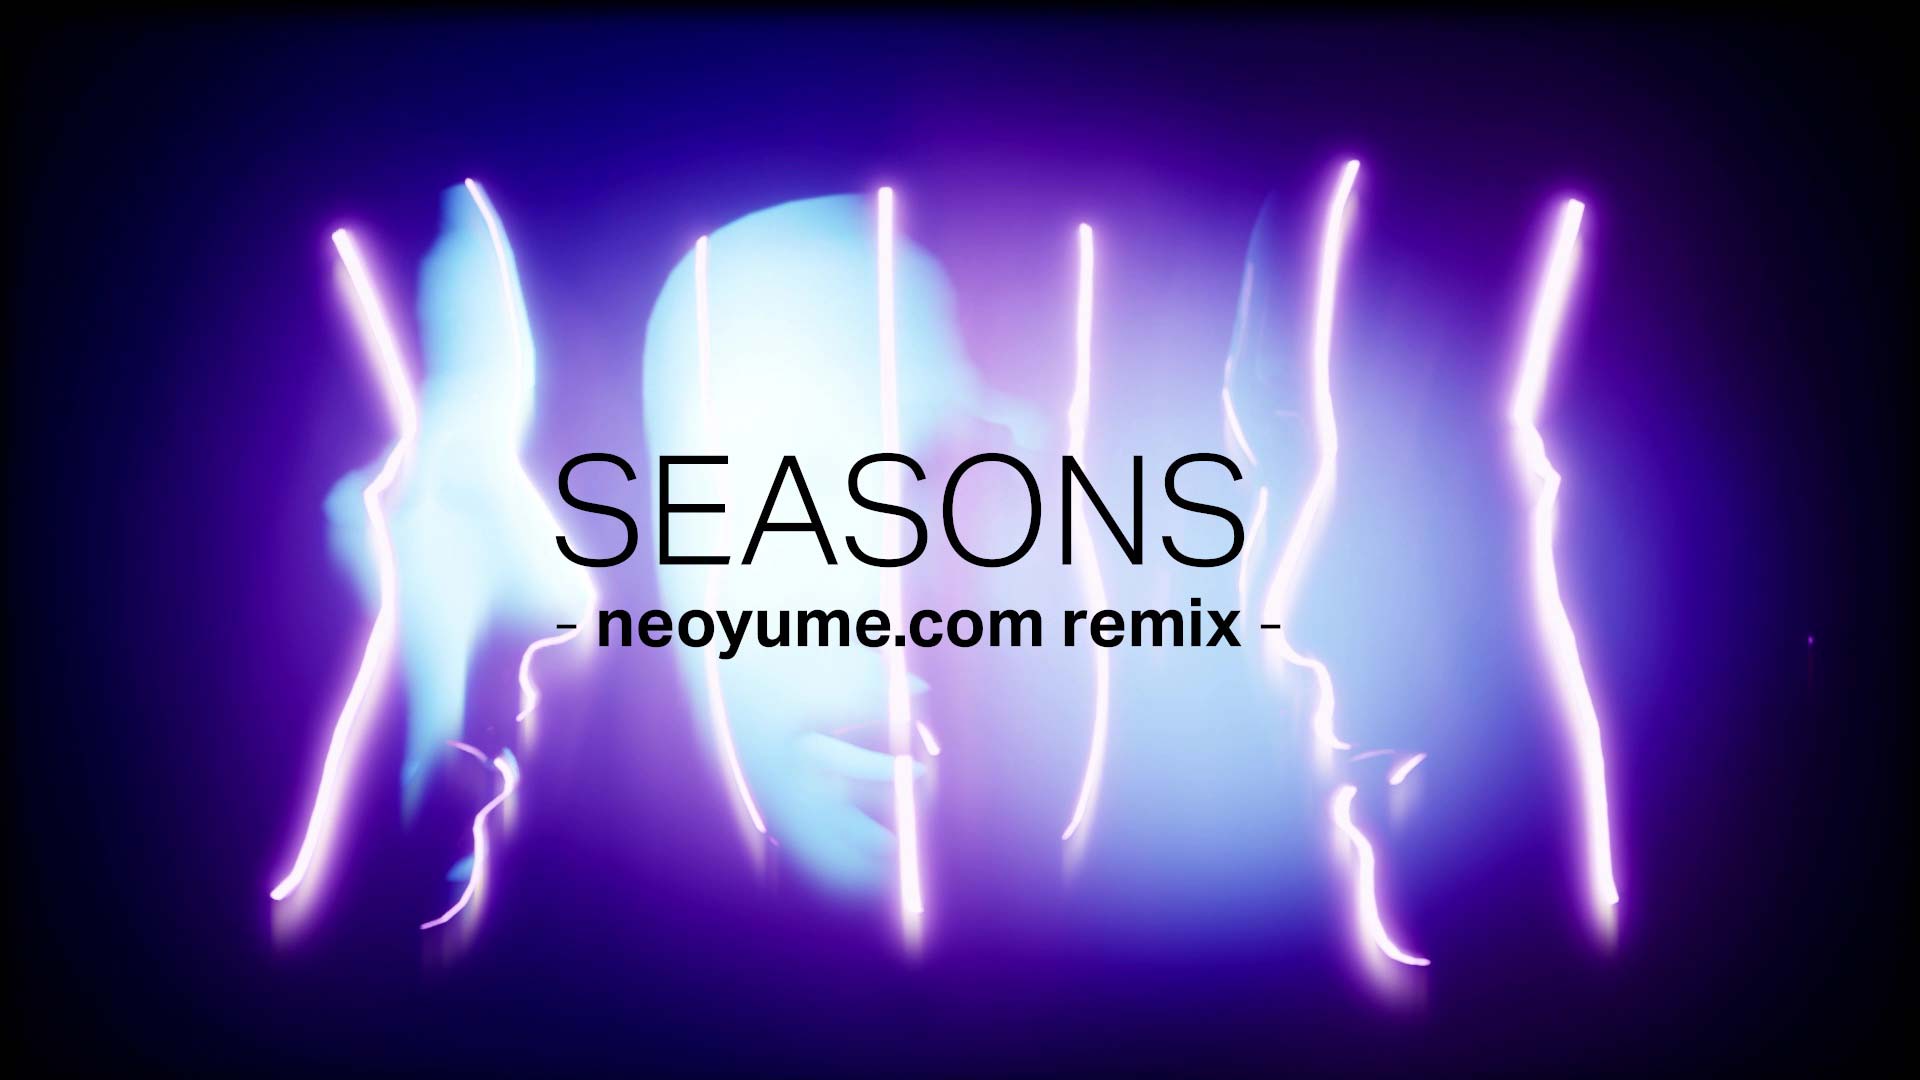 ayumix_seasons_neoyume_otitleNeo